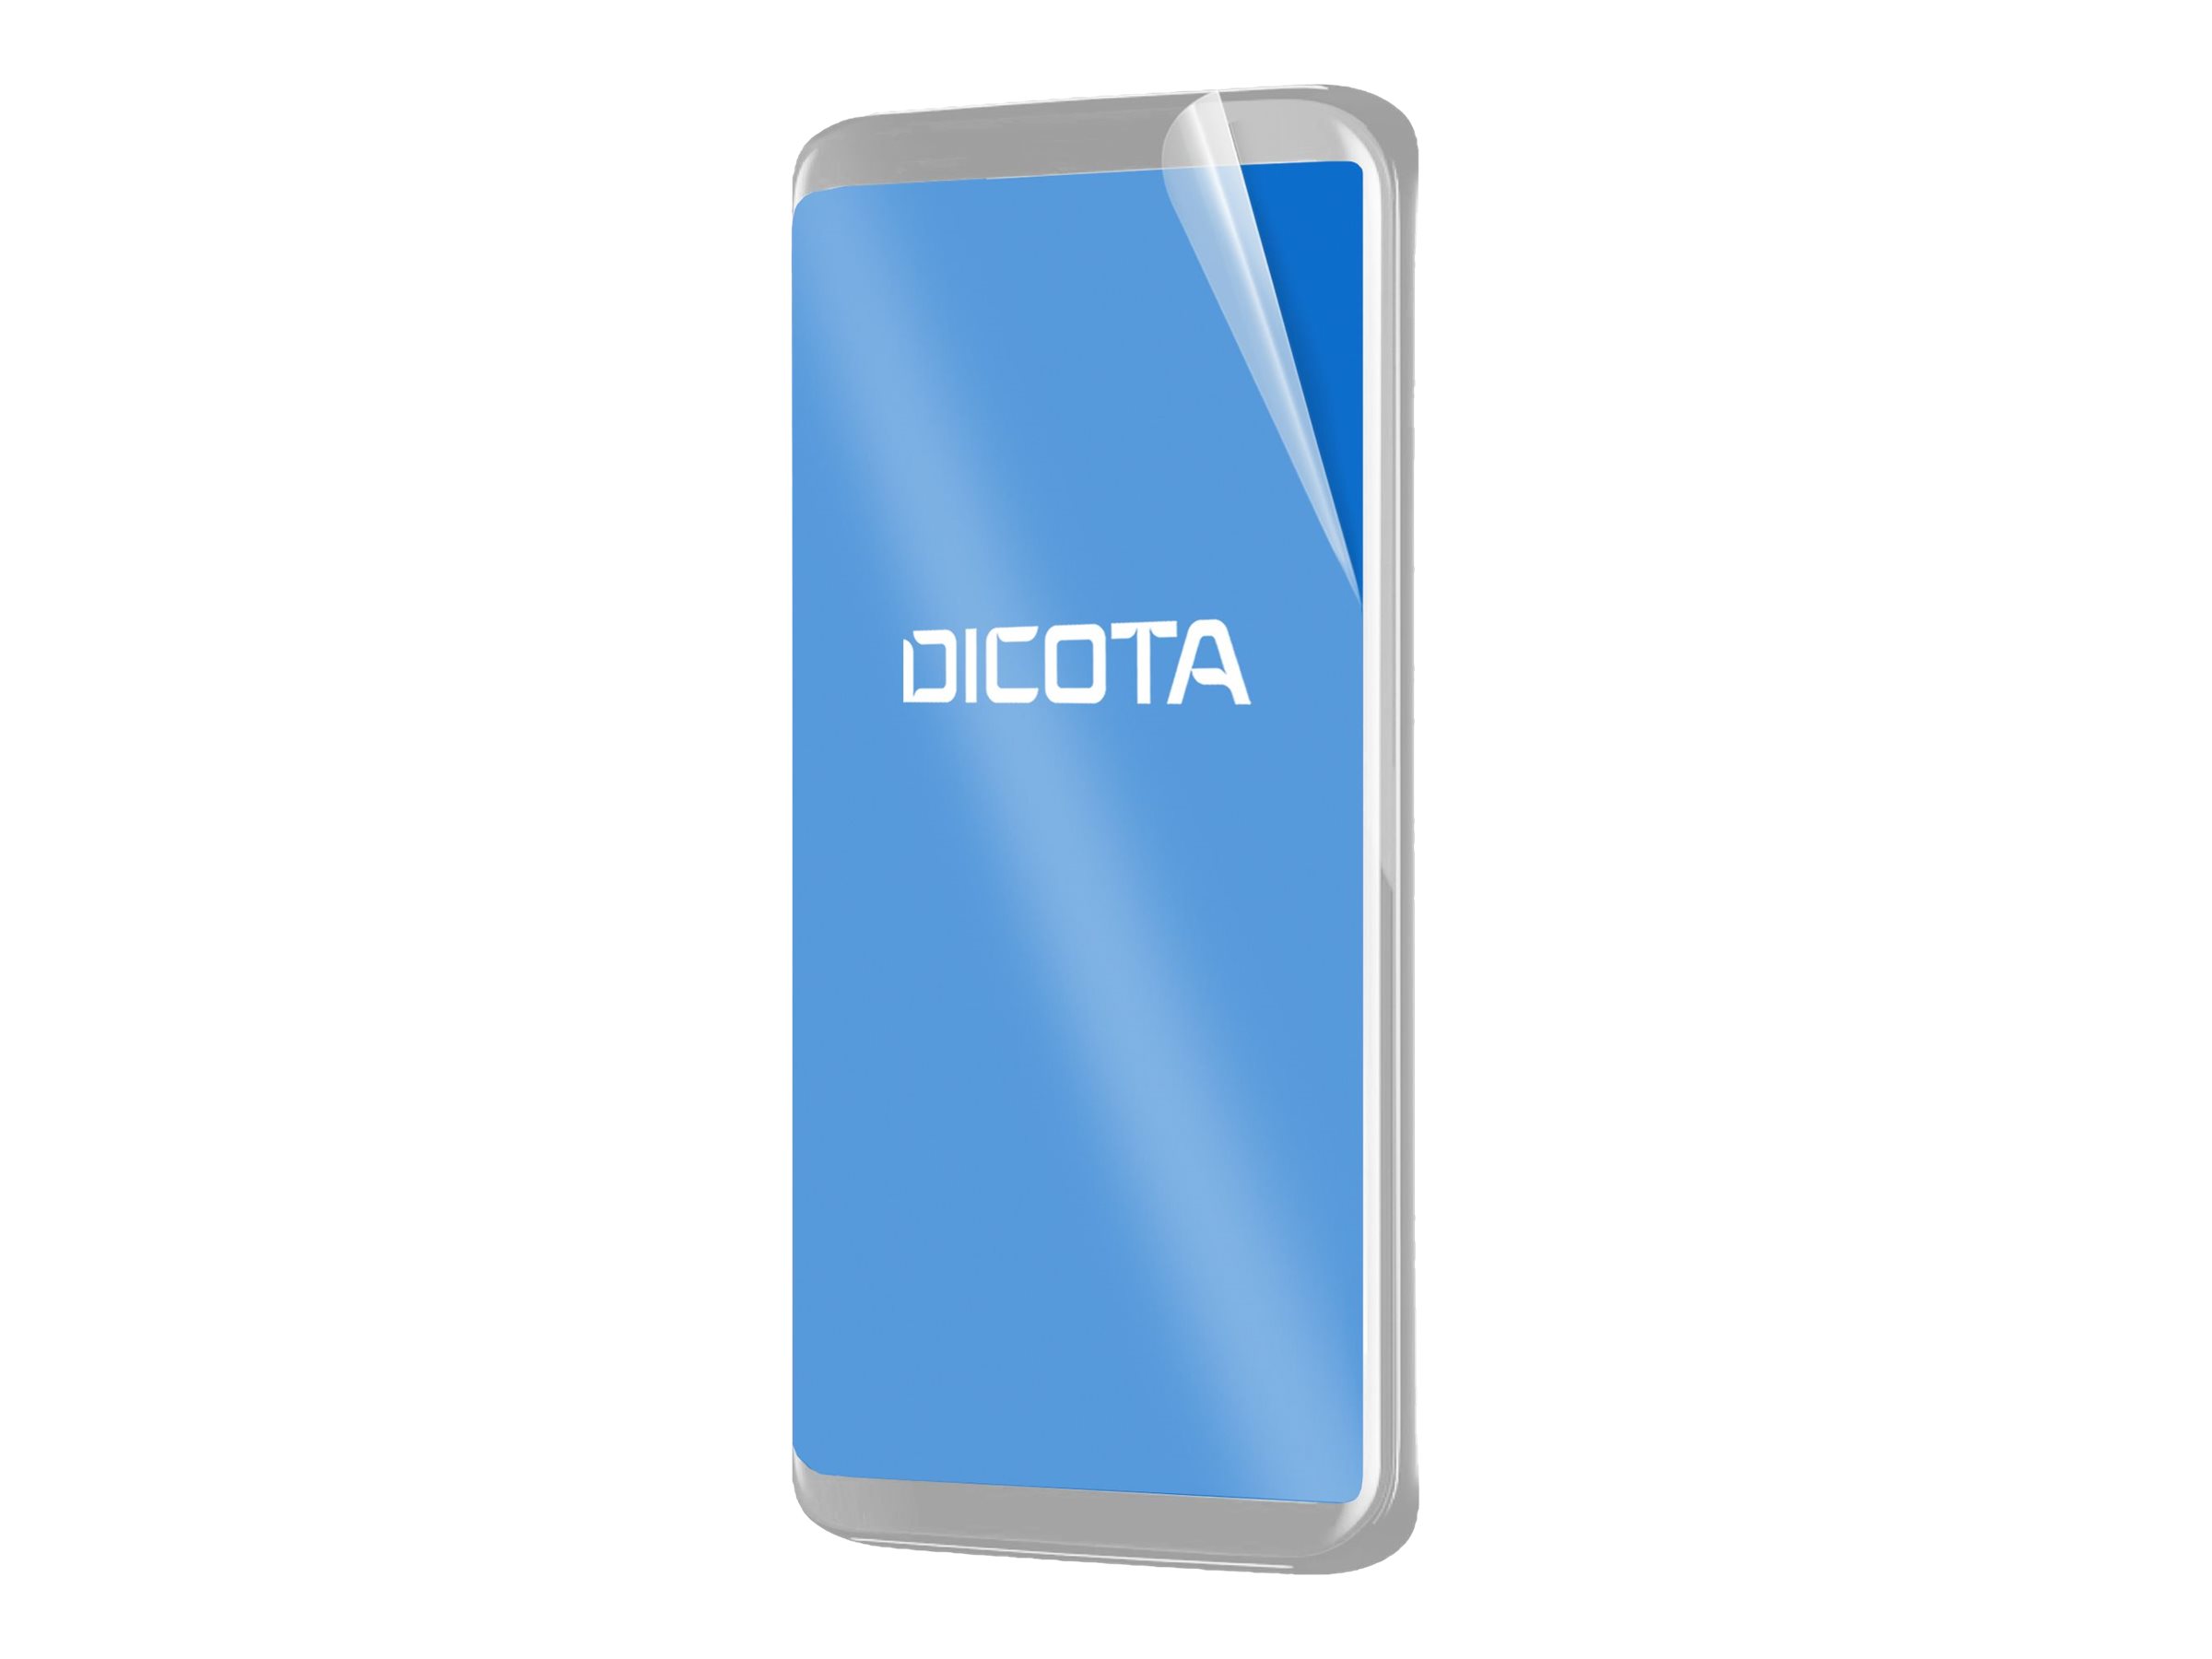 Dicota Bildschirmschutz für Handy - Blendschutzfilter, 9H, selbstklebend